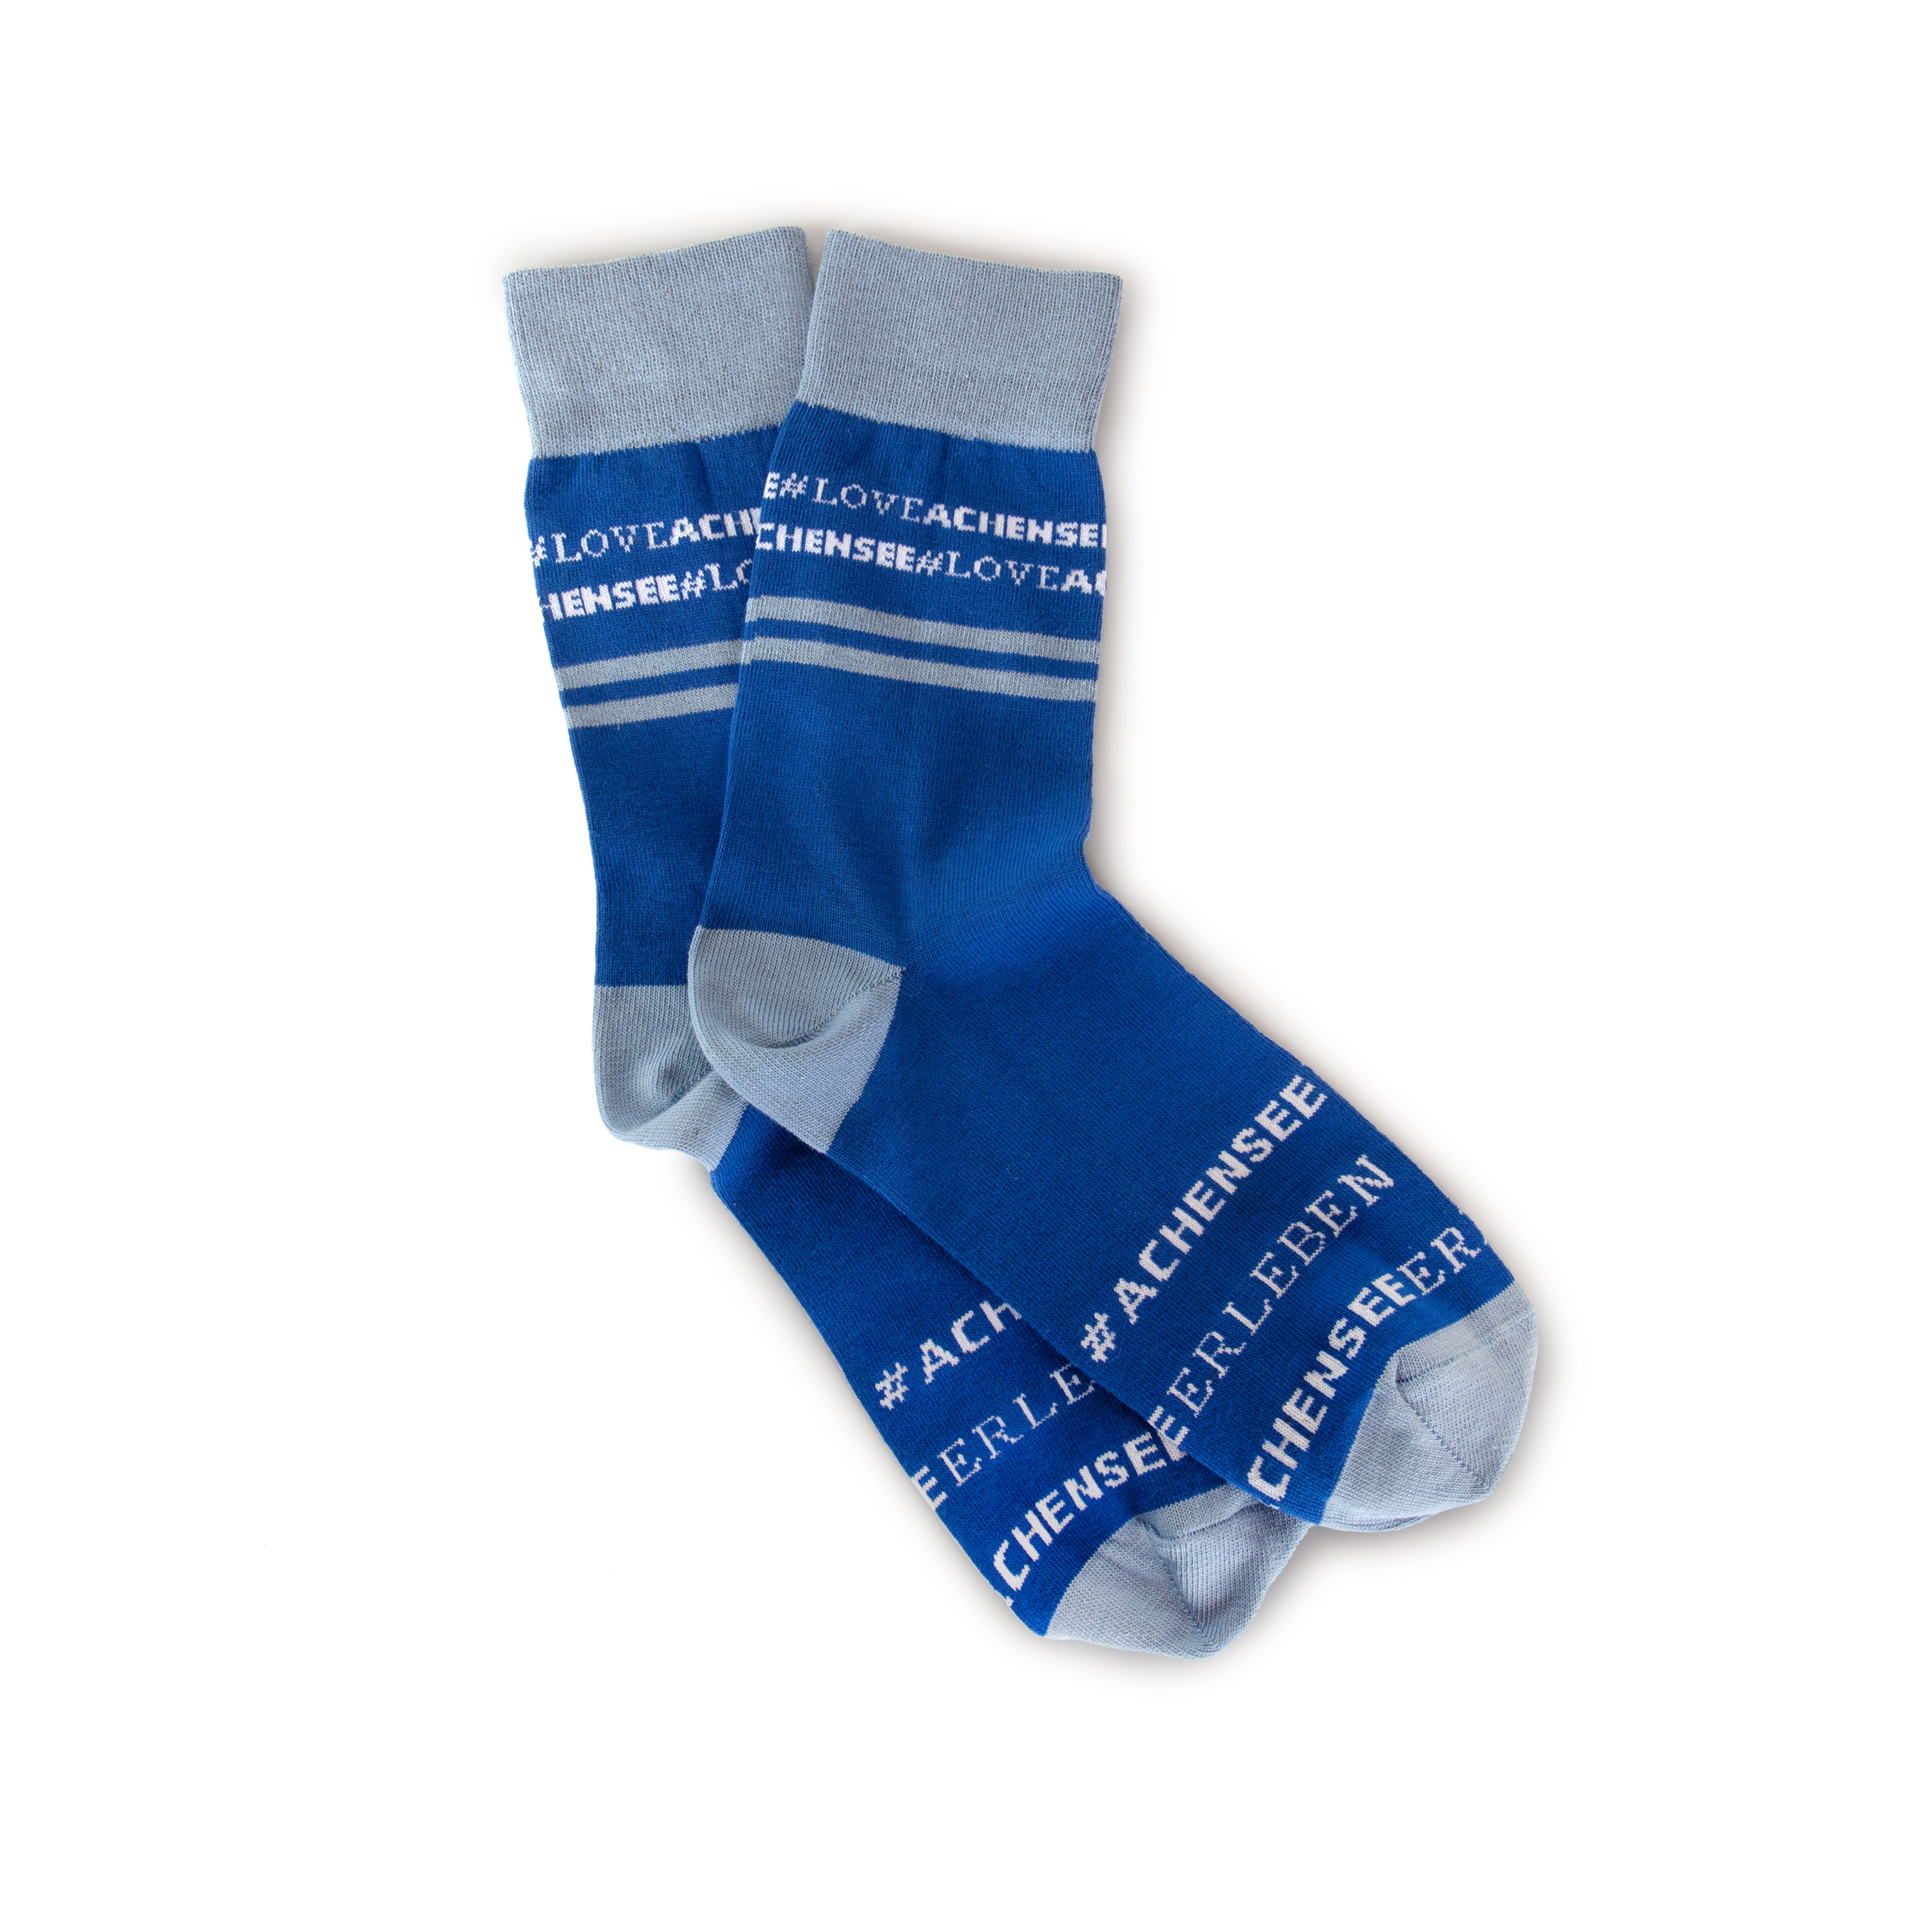 Socken in den Farben Blau und Grau